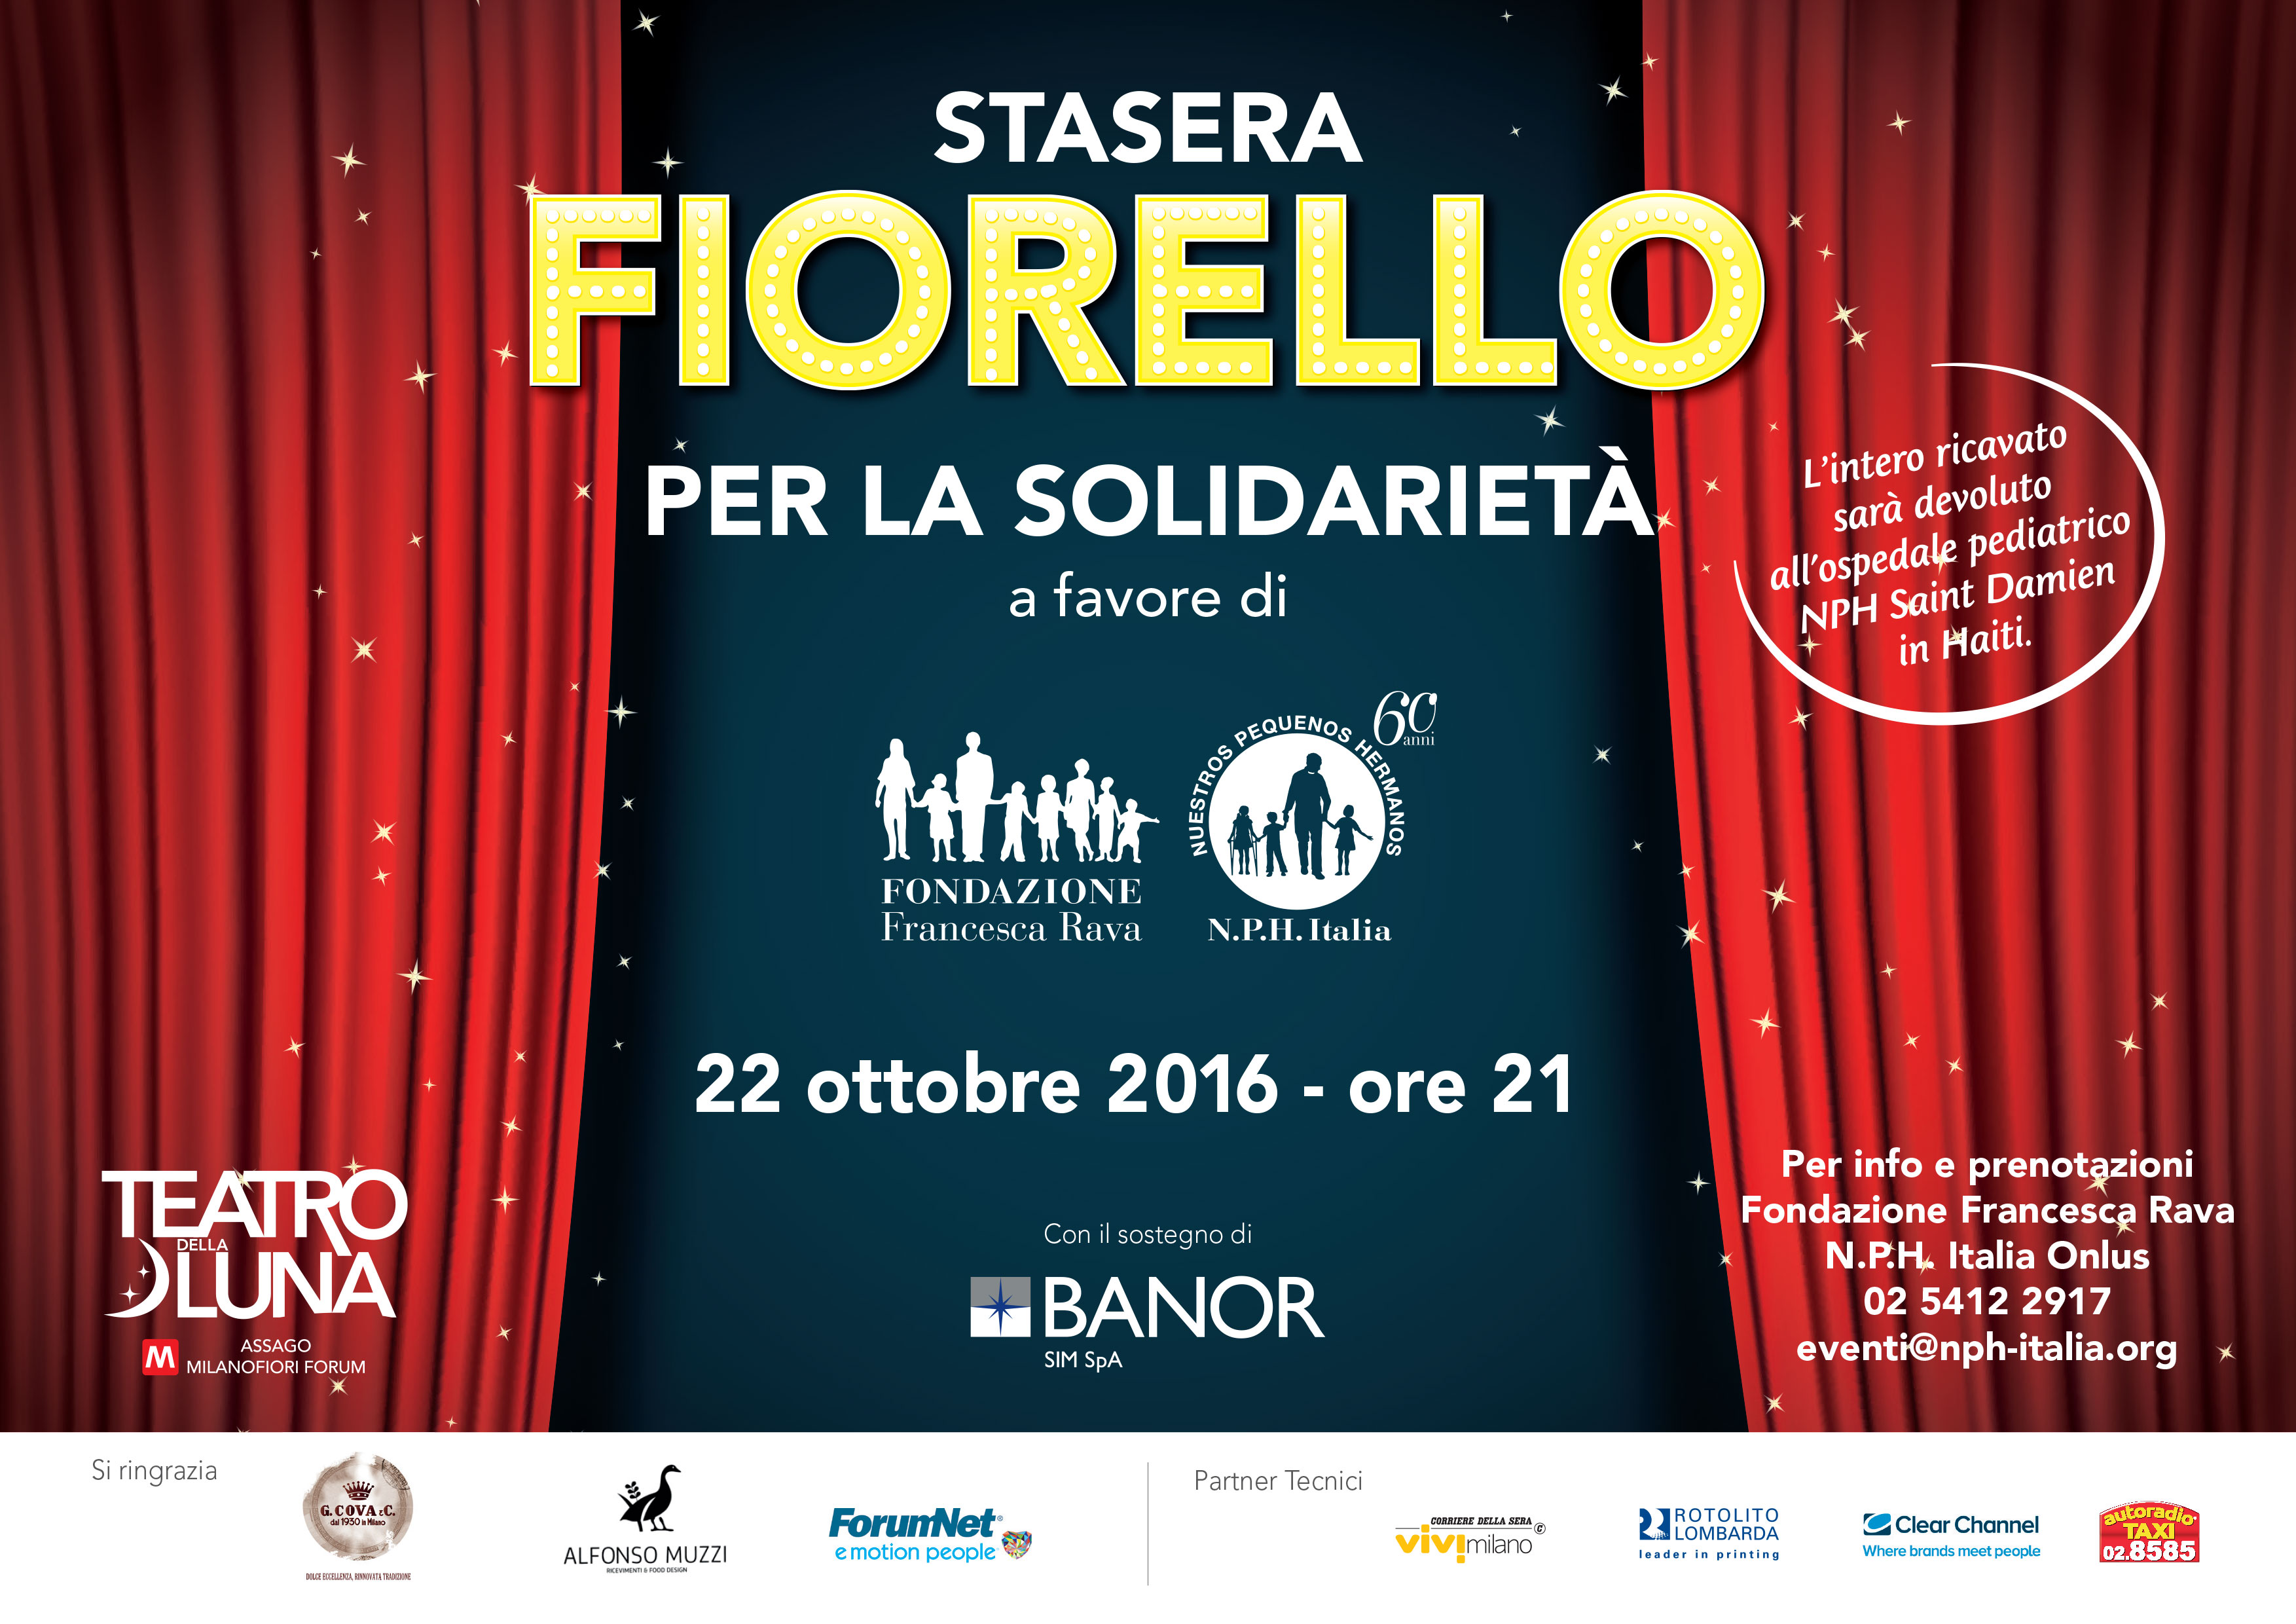 22 ottobre, ore 21, Teatro della Luna - `Stasera Fiorello per la Solidarietà`, spettacolo benefico per i bambini di Haiti